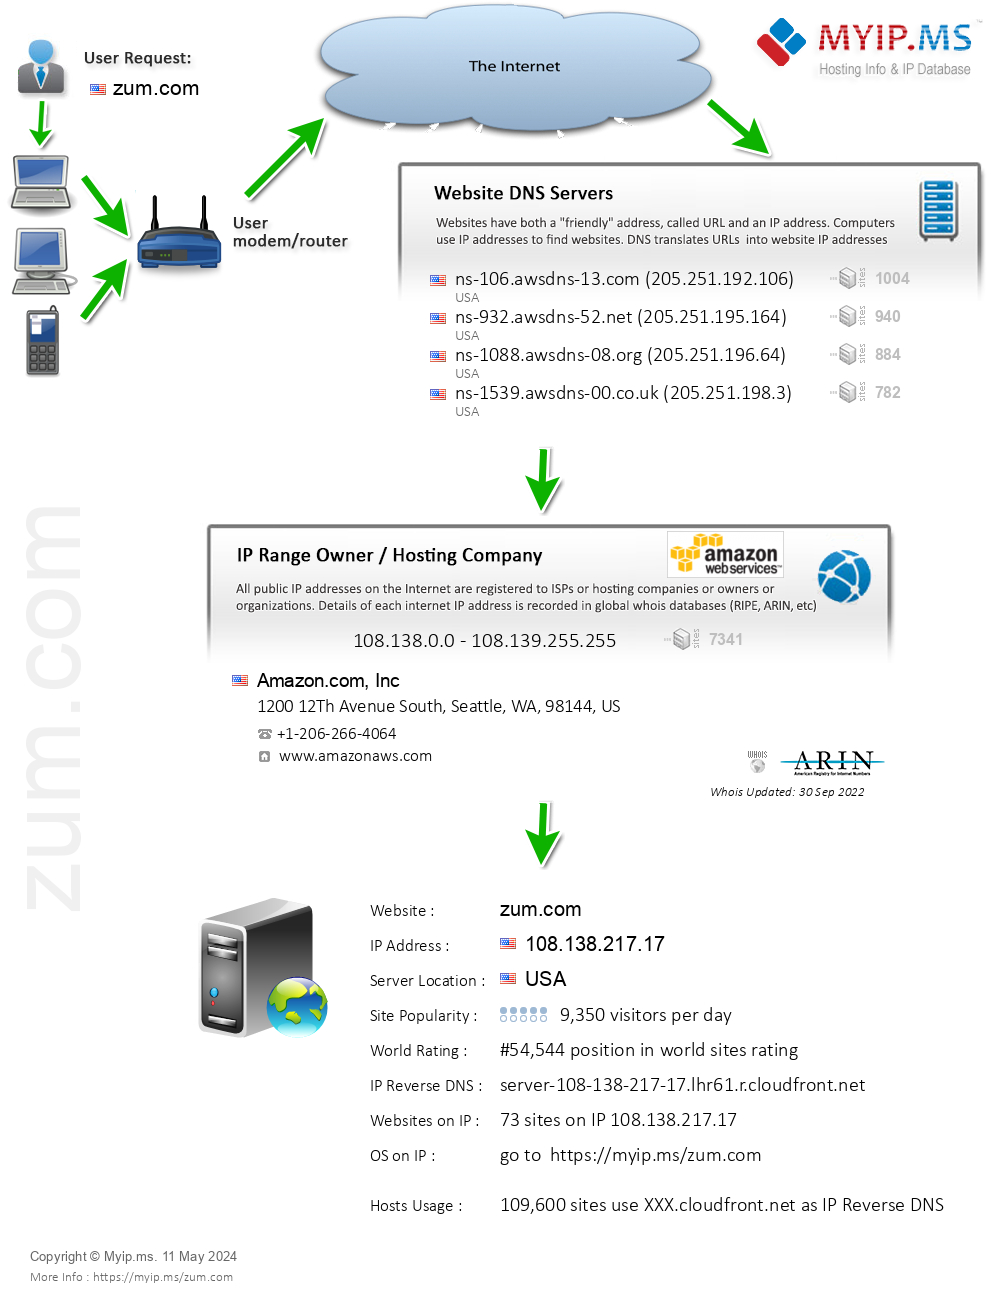 Zum.com - Website Hosting Visual IP Diagram